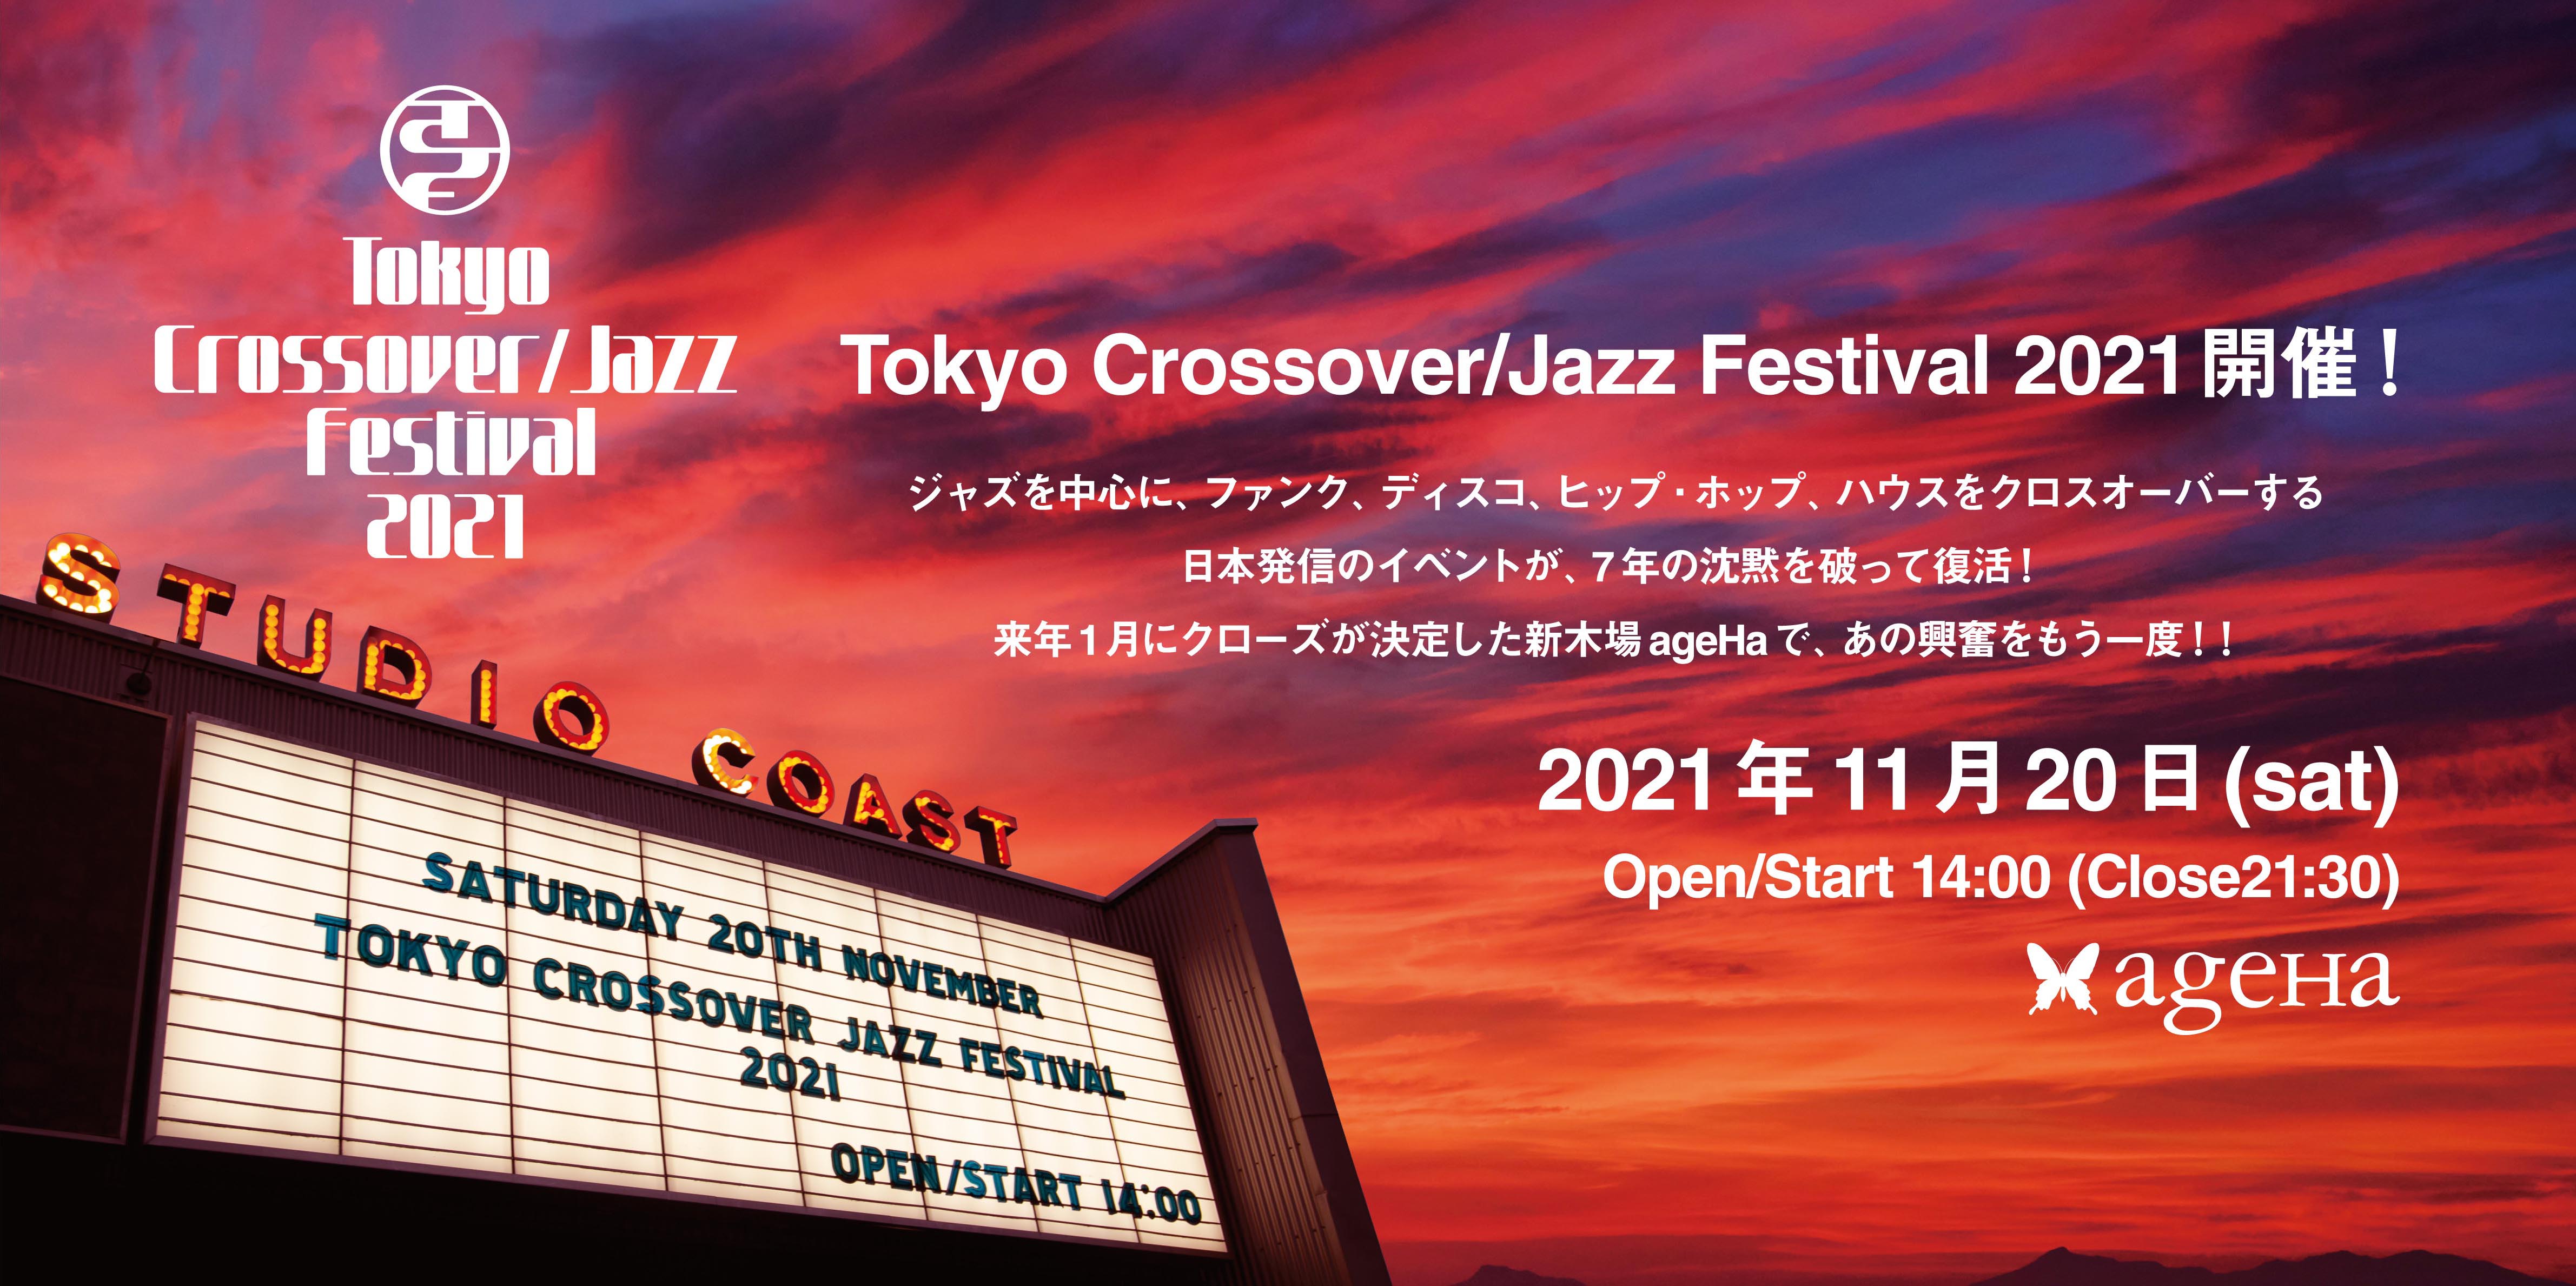 Tokyo crossover/Jazz festival 2021